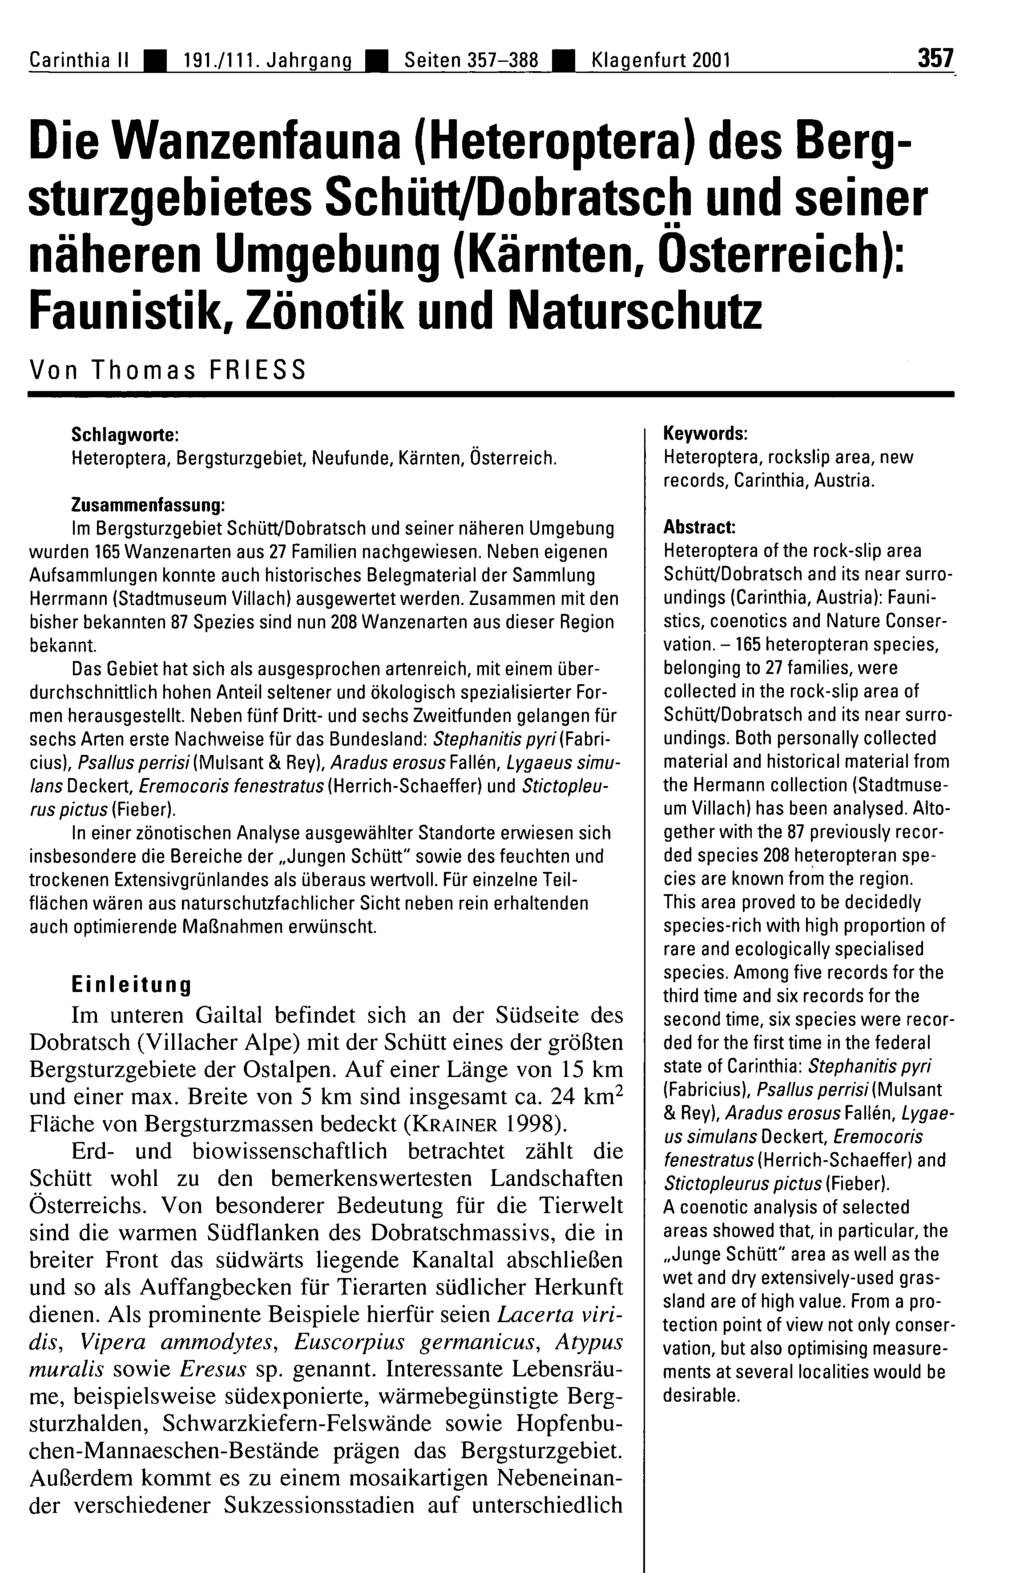 Naturwissenschaftlicher Verein für Kärnten, Austria, download unter www.biologiezentrum.at Carinthia II 9./ Ì.